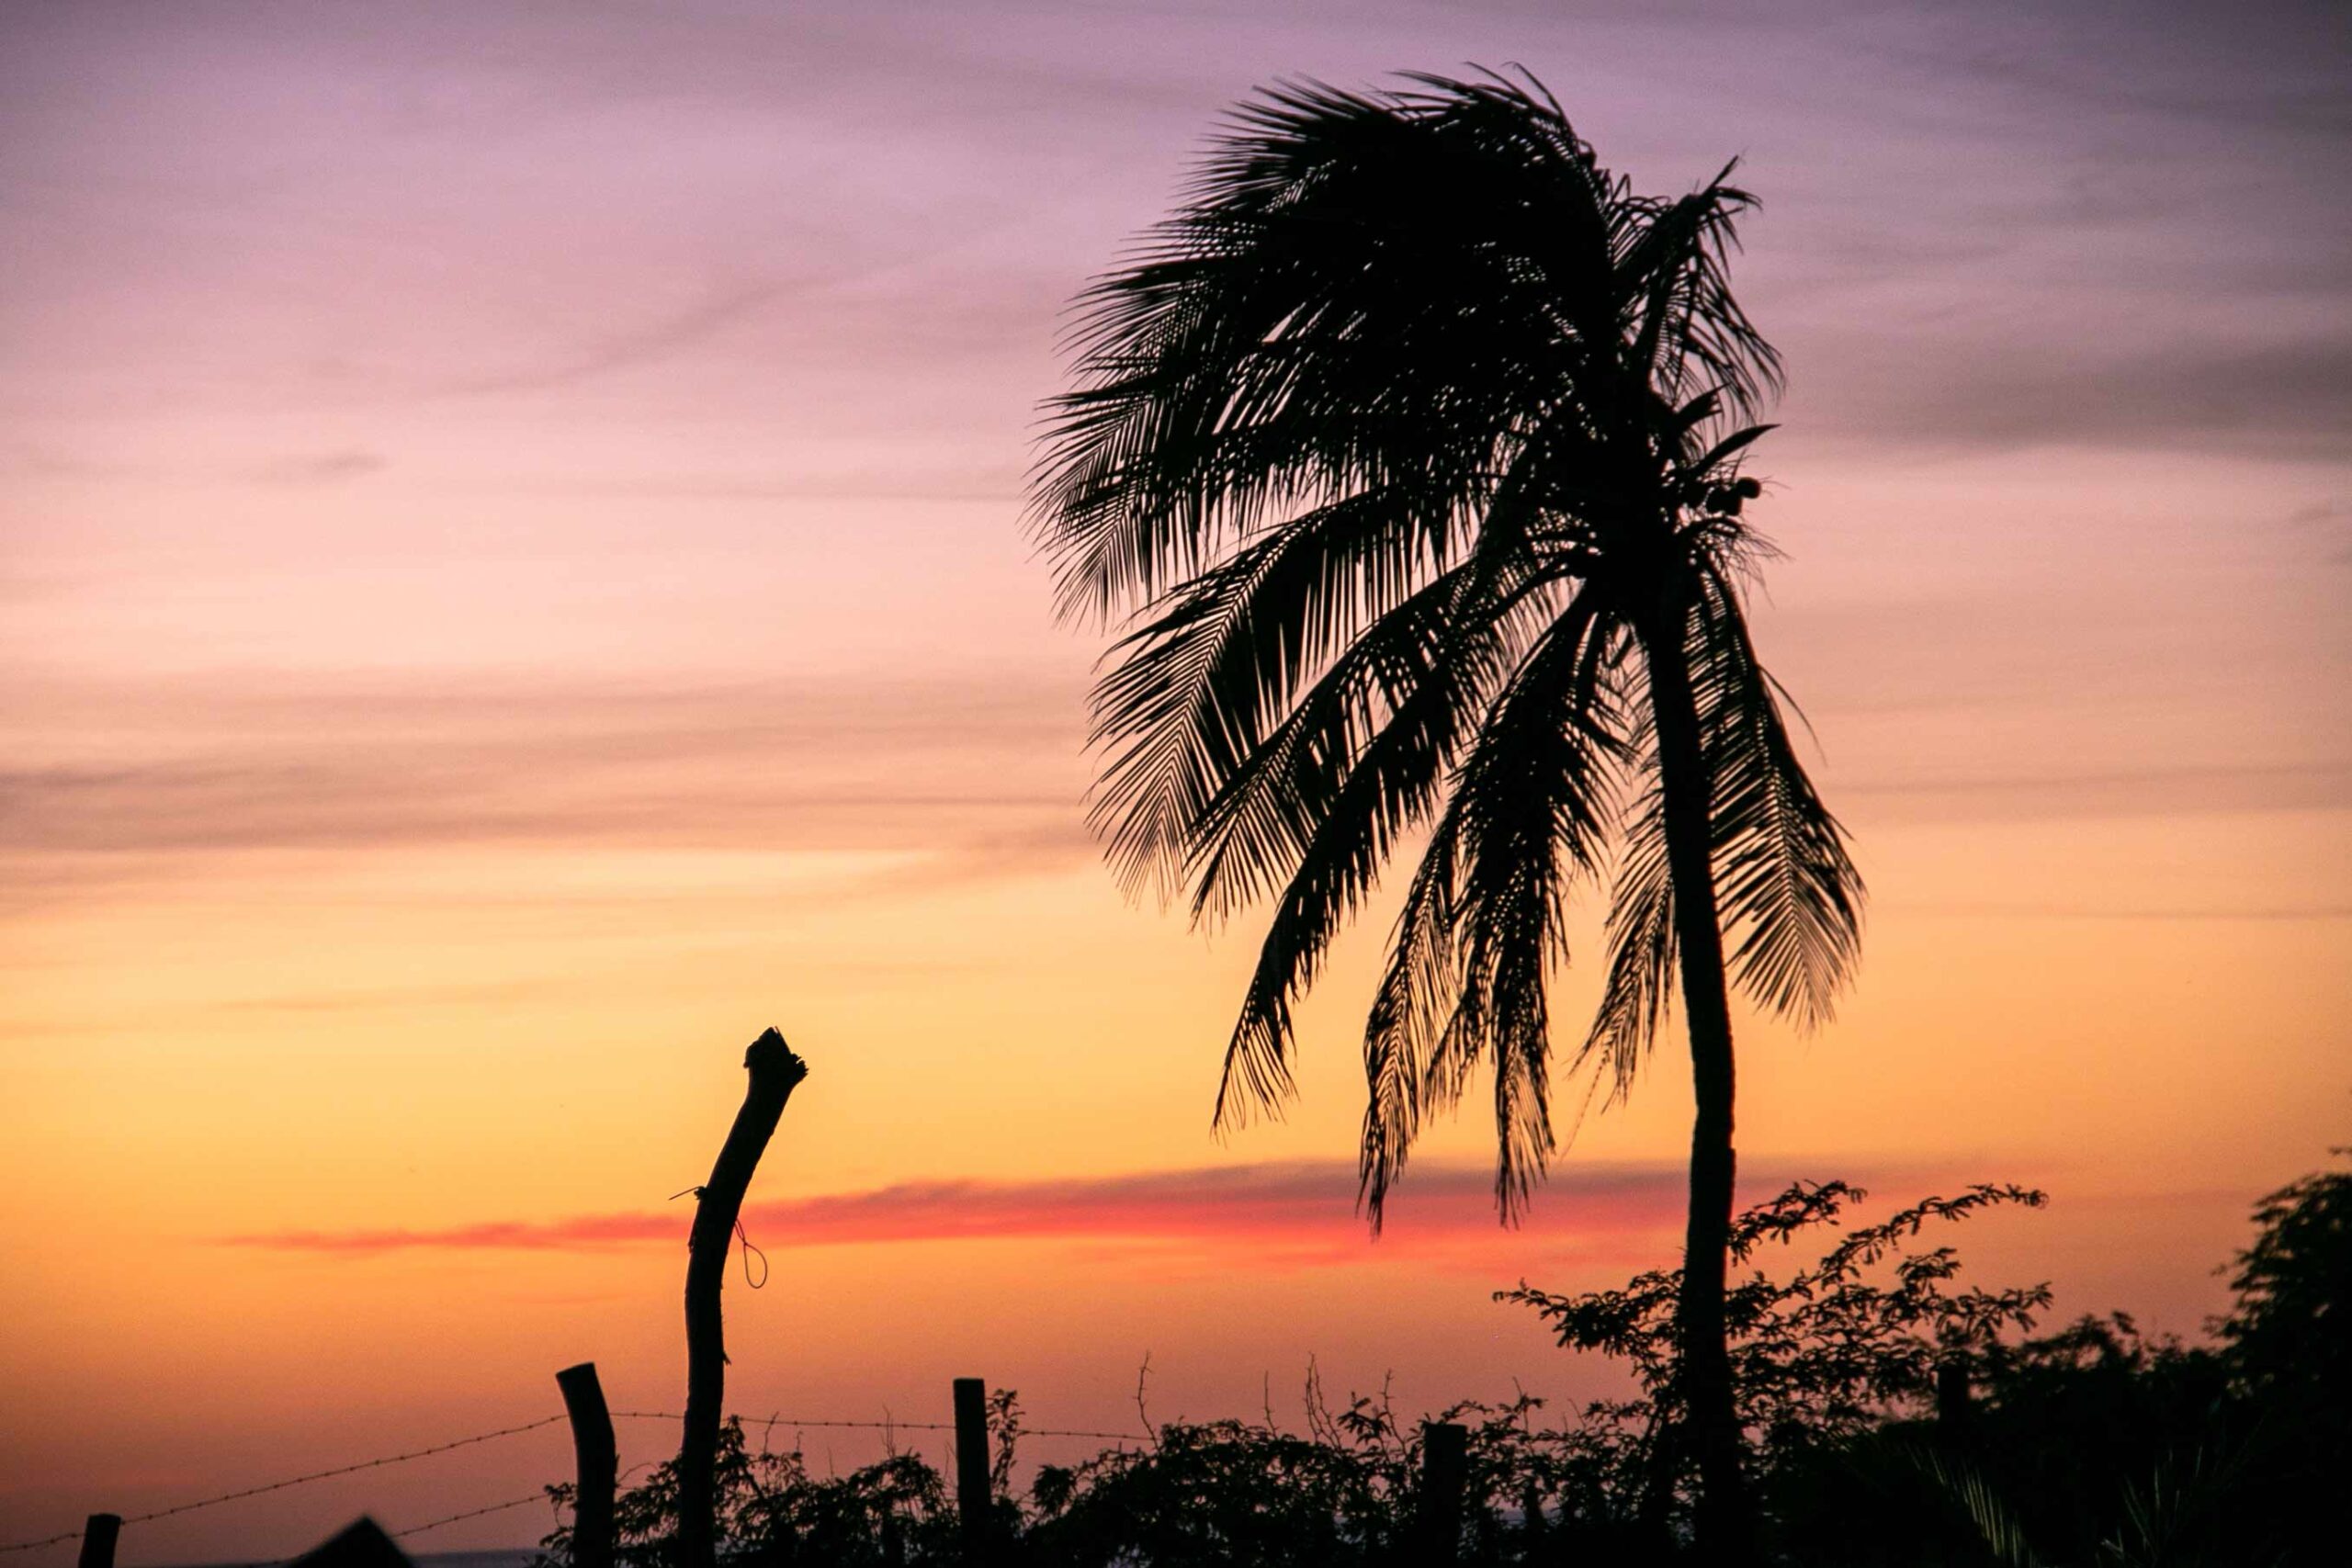 Sunset at Playa Santana Nicaragua